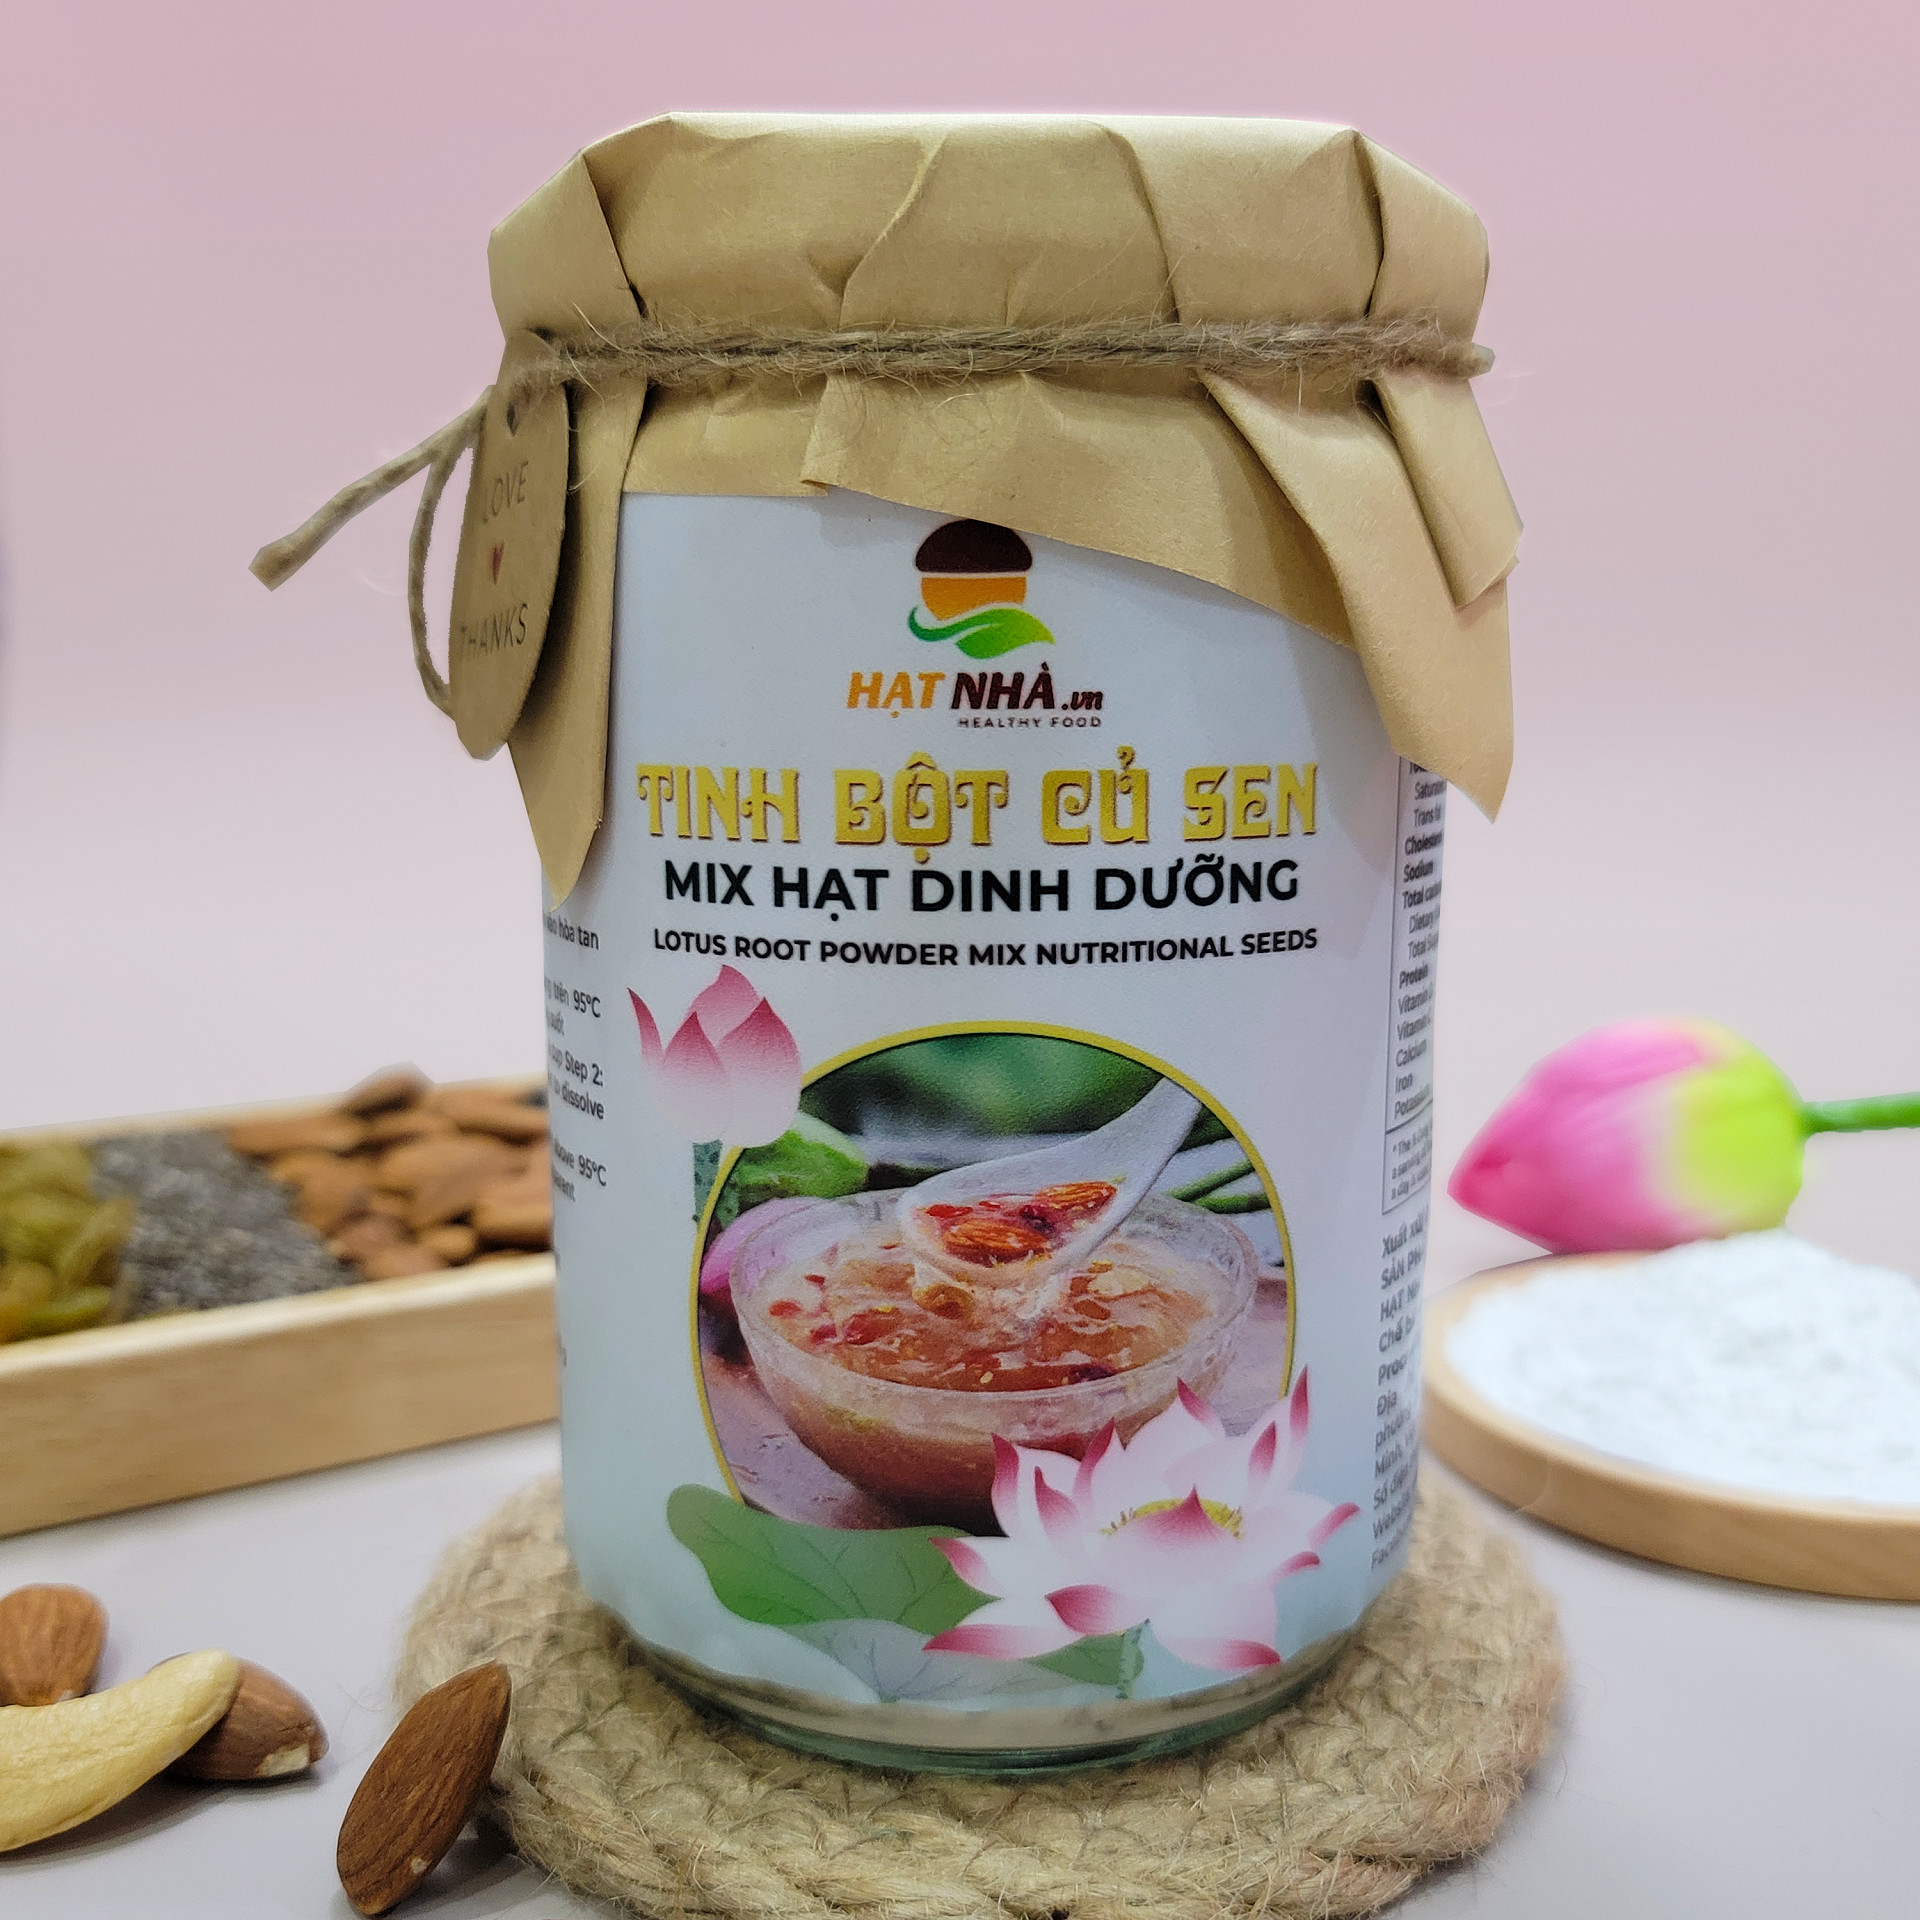 Tinh bột củ sen mix hạt dinh dưỡng, hàng made in Việt Nam